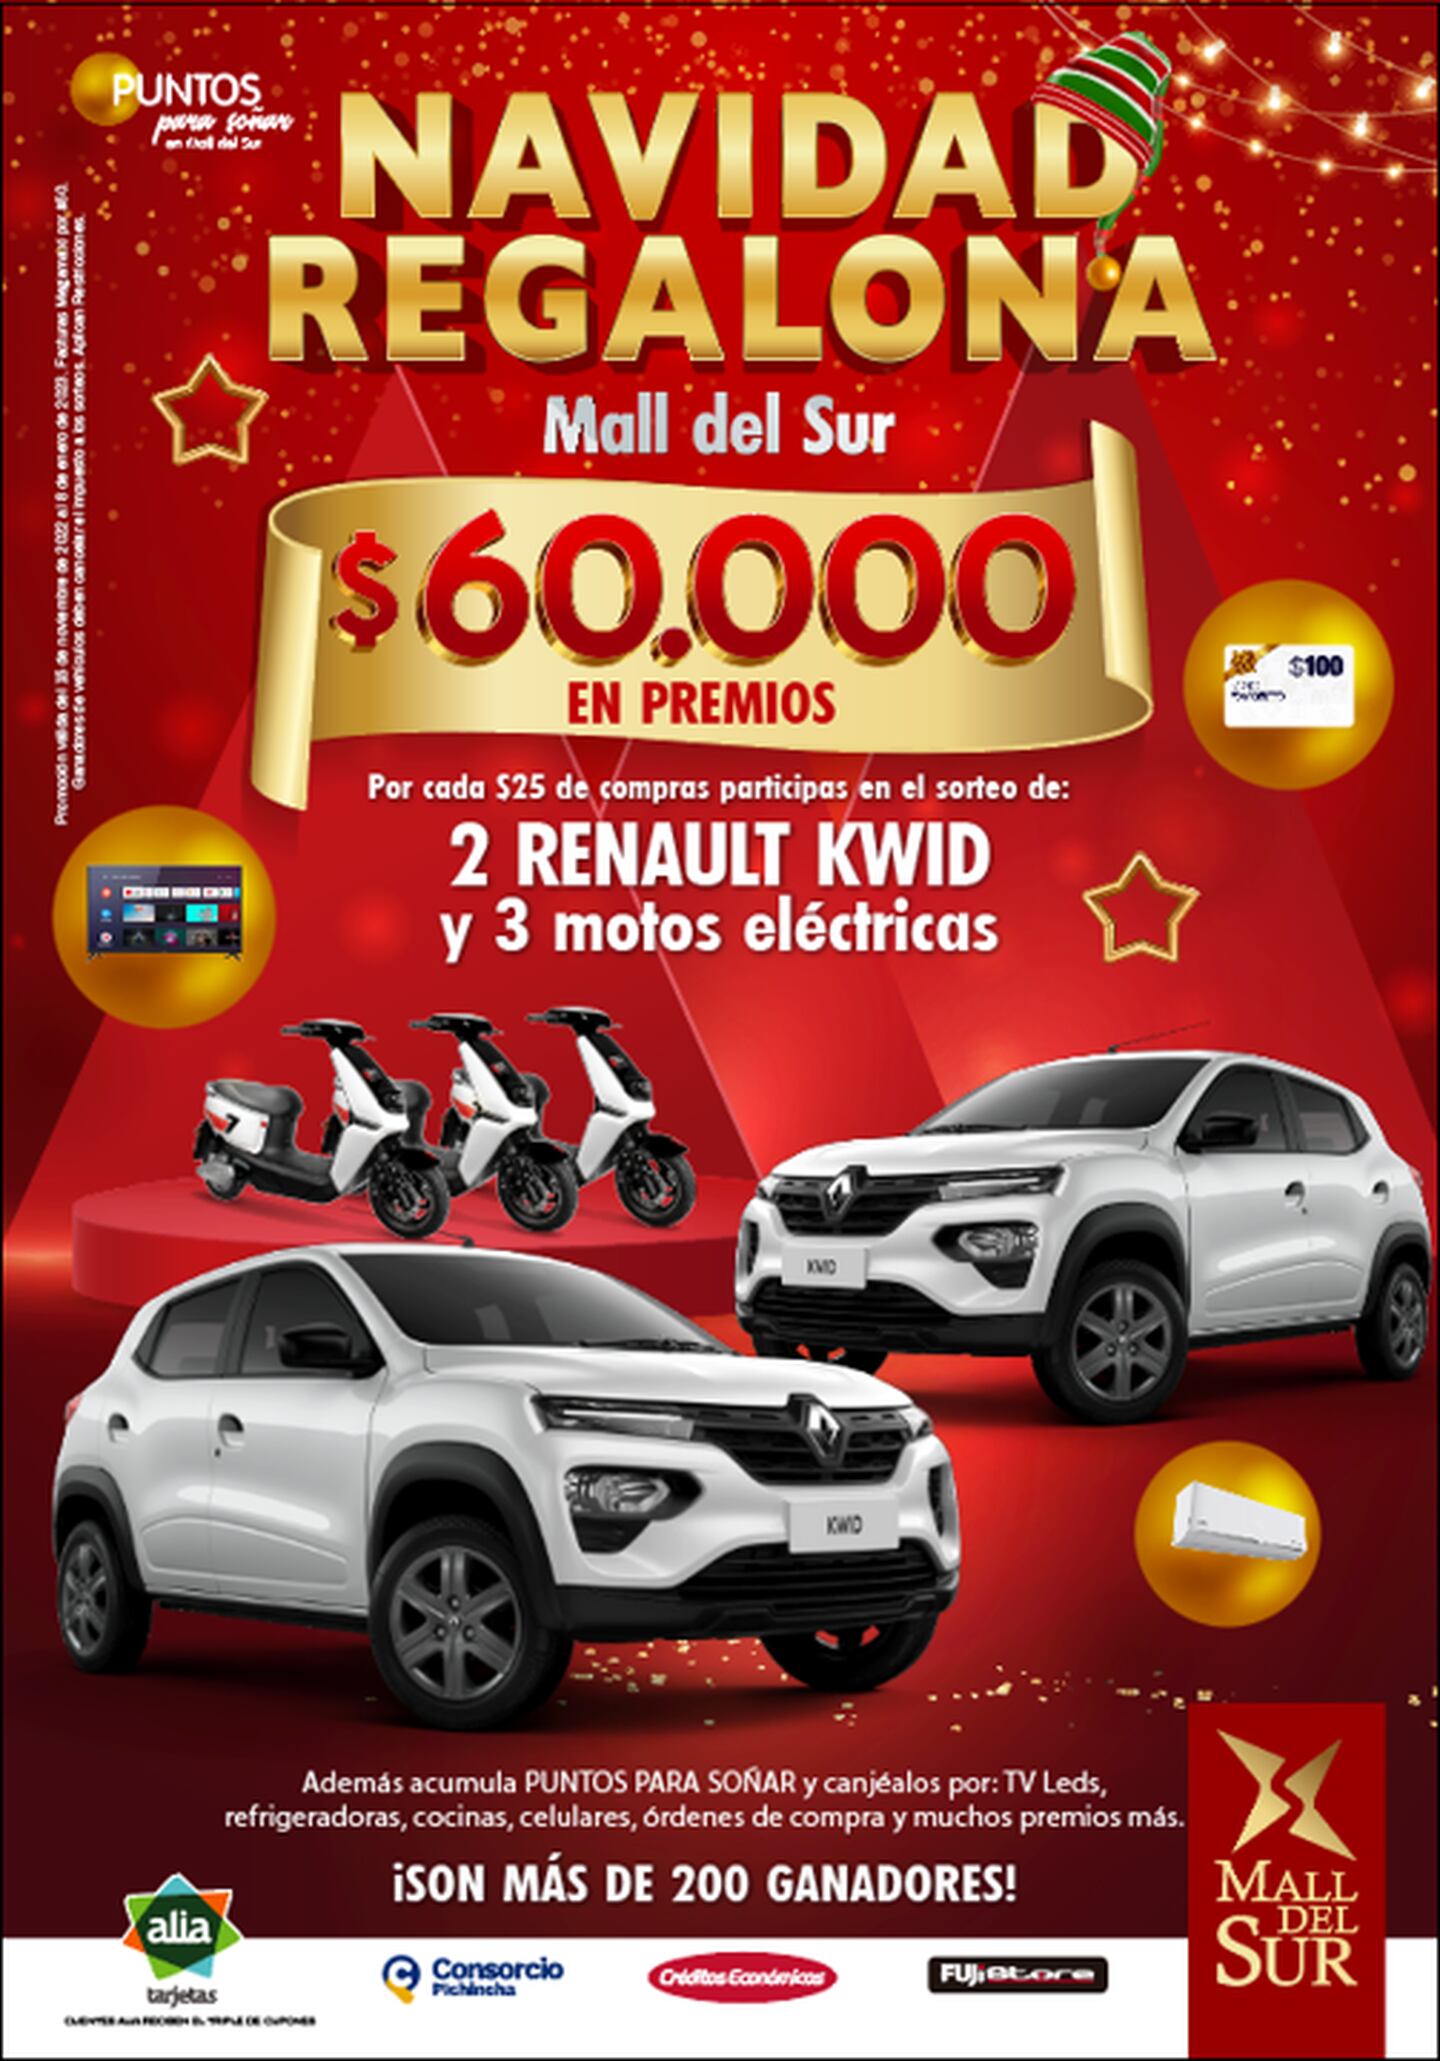 El centro comercial continúa con la promoción Navidad Regalona, con premios a participantes de sorteos.